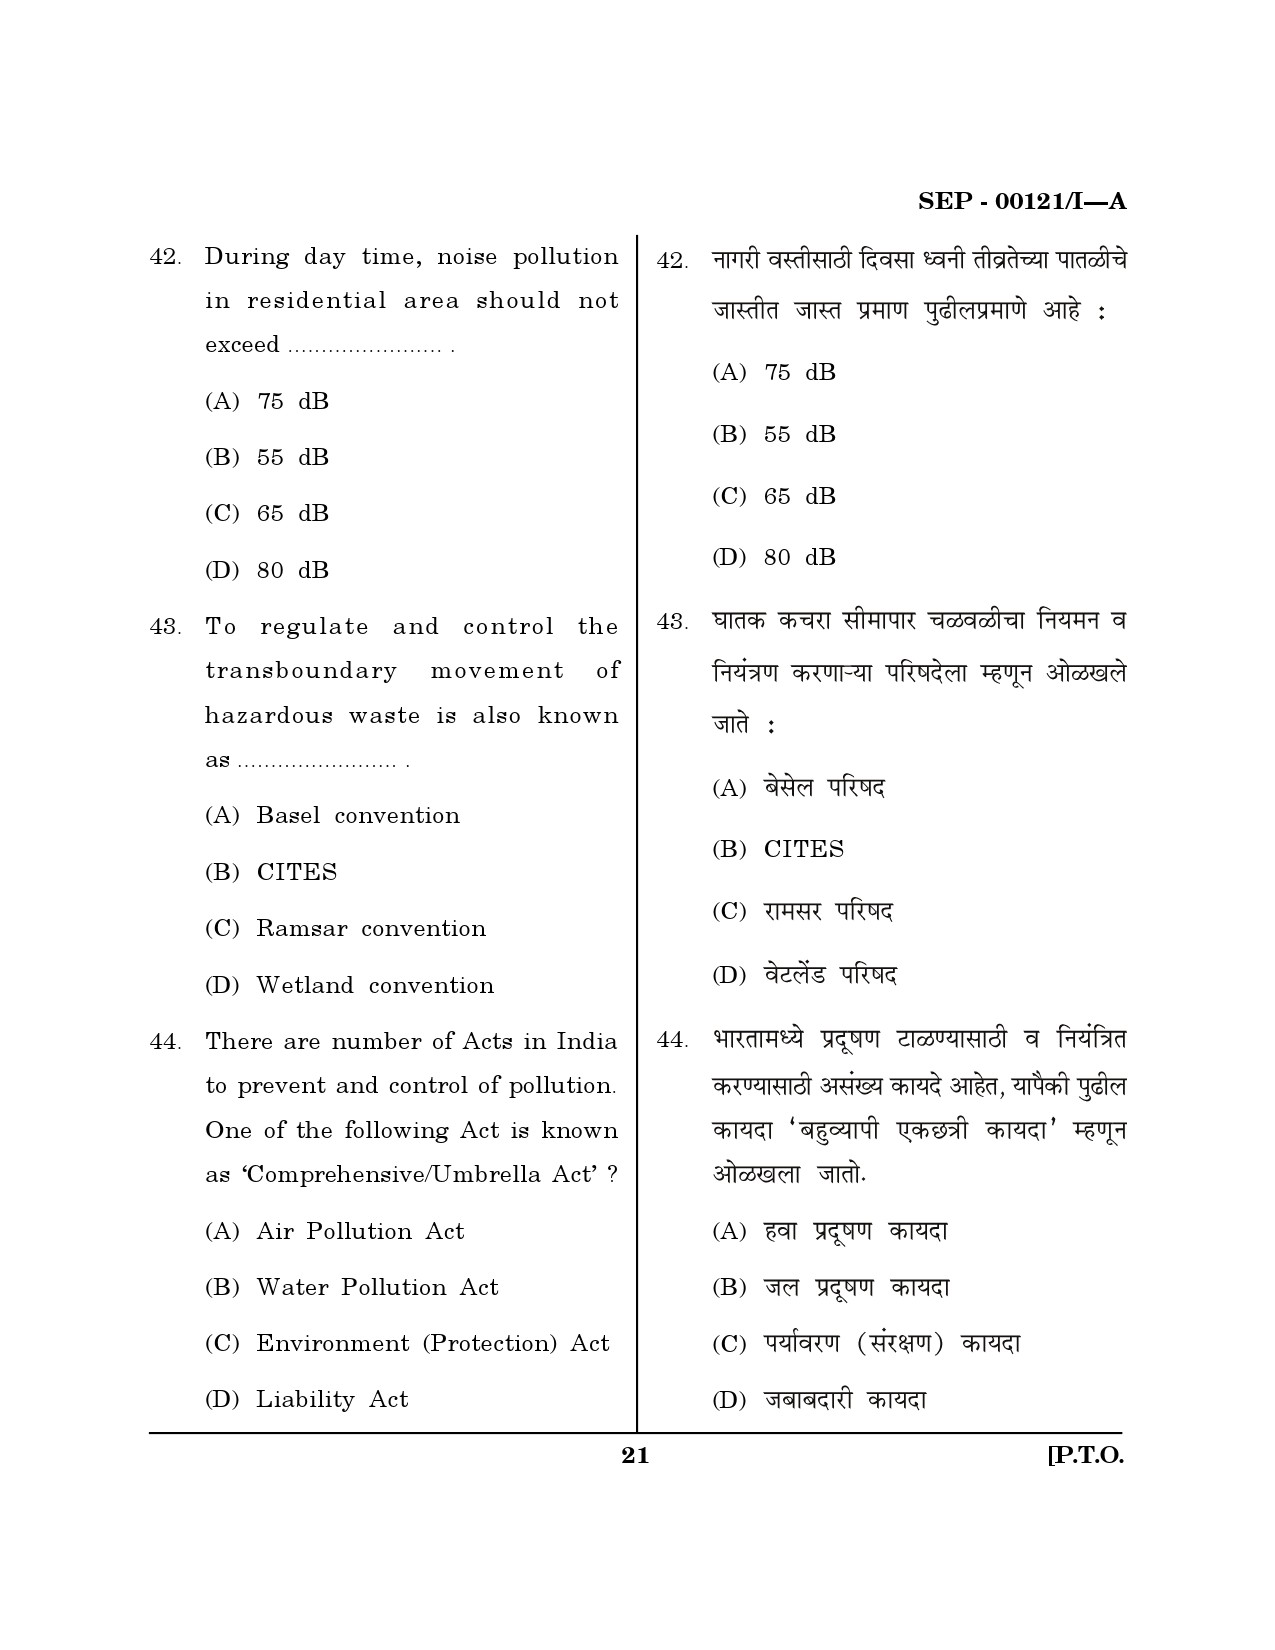 Maharashtra SET Exam Paper I Question Paper September 2021 20